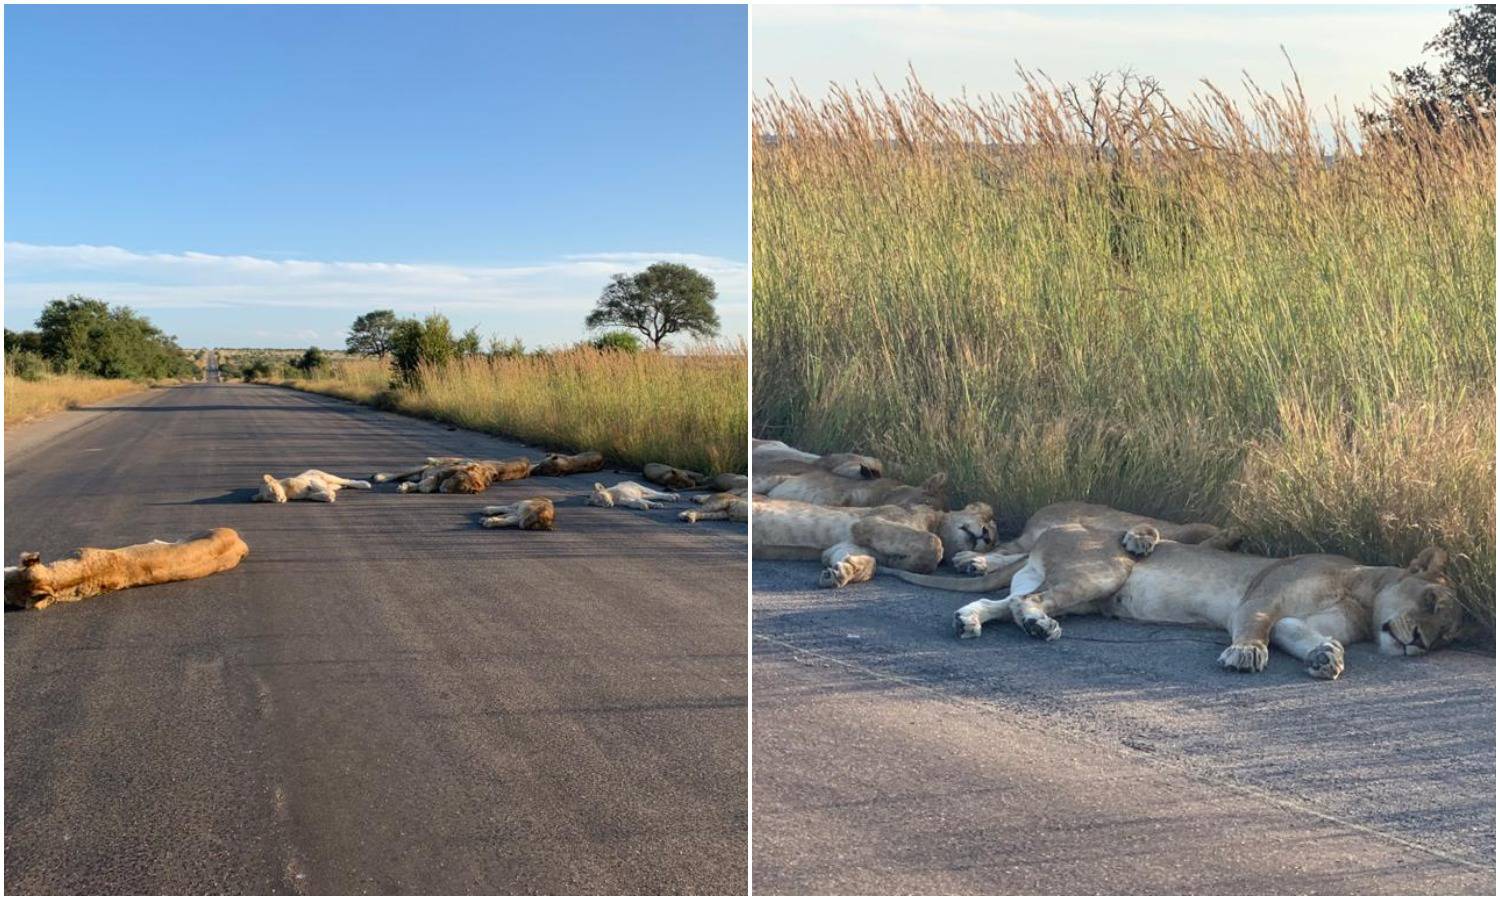 Umjesto turista, na cesti lavovi - uživaju u vlastitom carstvu